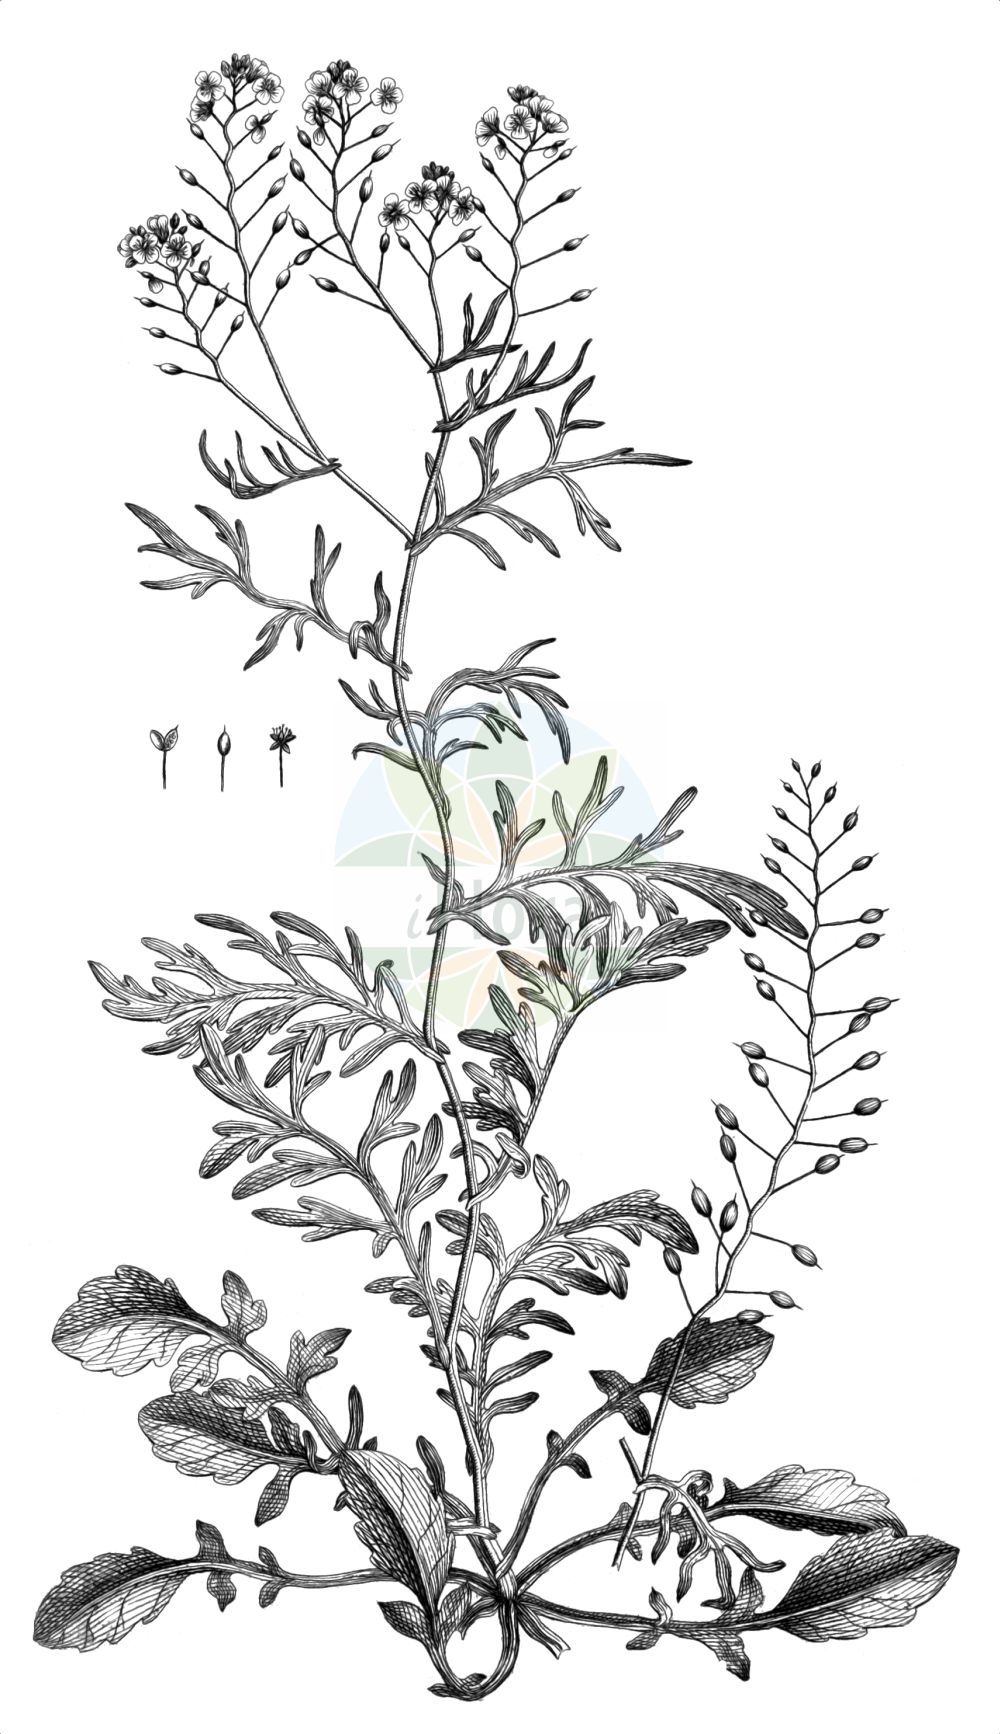 Historische Abbildung von Rorippa pyrenaica (Pyrenäen-Sumpfkresse - Pyrenean Yellowcress). Das Bild zeigt Blatt, Bluete, Frucht und Same. ---- Historical Drawing of Rorippa pyrenaica (Pyrenäen-Sumpfkresse - Pyrenean Yellowcress). The image is showing leaf, flower, fruit and seed.(Rorippa pyrenaica,Pyrenäen-Sumpfkresse,Pyrenean Yellowcress,Brachiolobos pyrenaicus,Lepidium stylosum,Nasturtium hispanicum,Nasturtium pyrenaicum,Rorippa hispanica,Rorippa pyrenaica,Rorippa stylosa,Pyrenaeen-Sumpfkresse,Pyrenean Yellowcress,Rorippa,Sumpfkresse,Yellowcress,Brassicaceae,Kreuzblütler,Cabbage family,Blatt,Bluete,Frucht,Same,leaf,flower,fruit,seed,Allioni (1785))